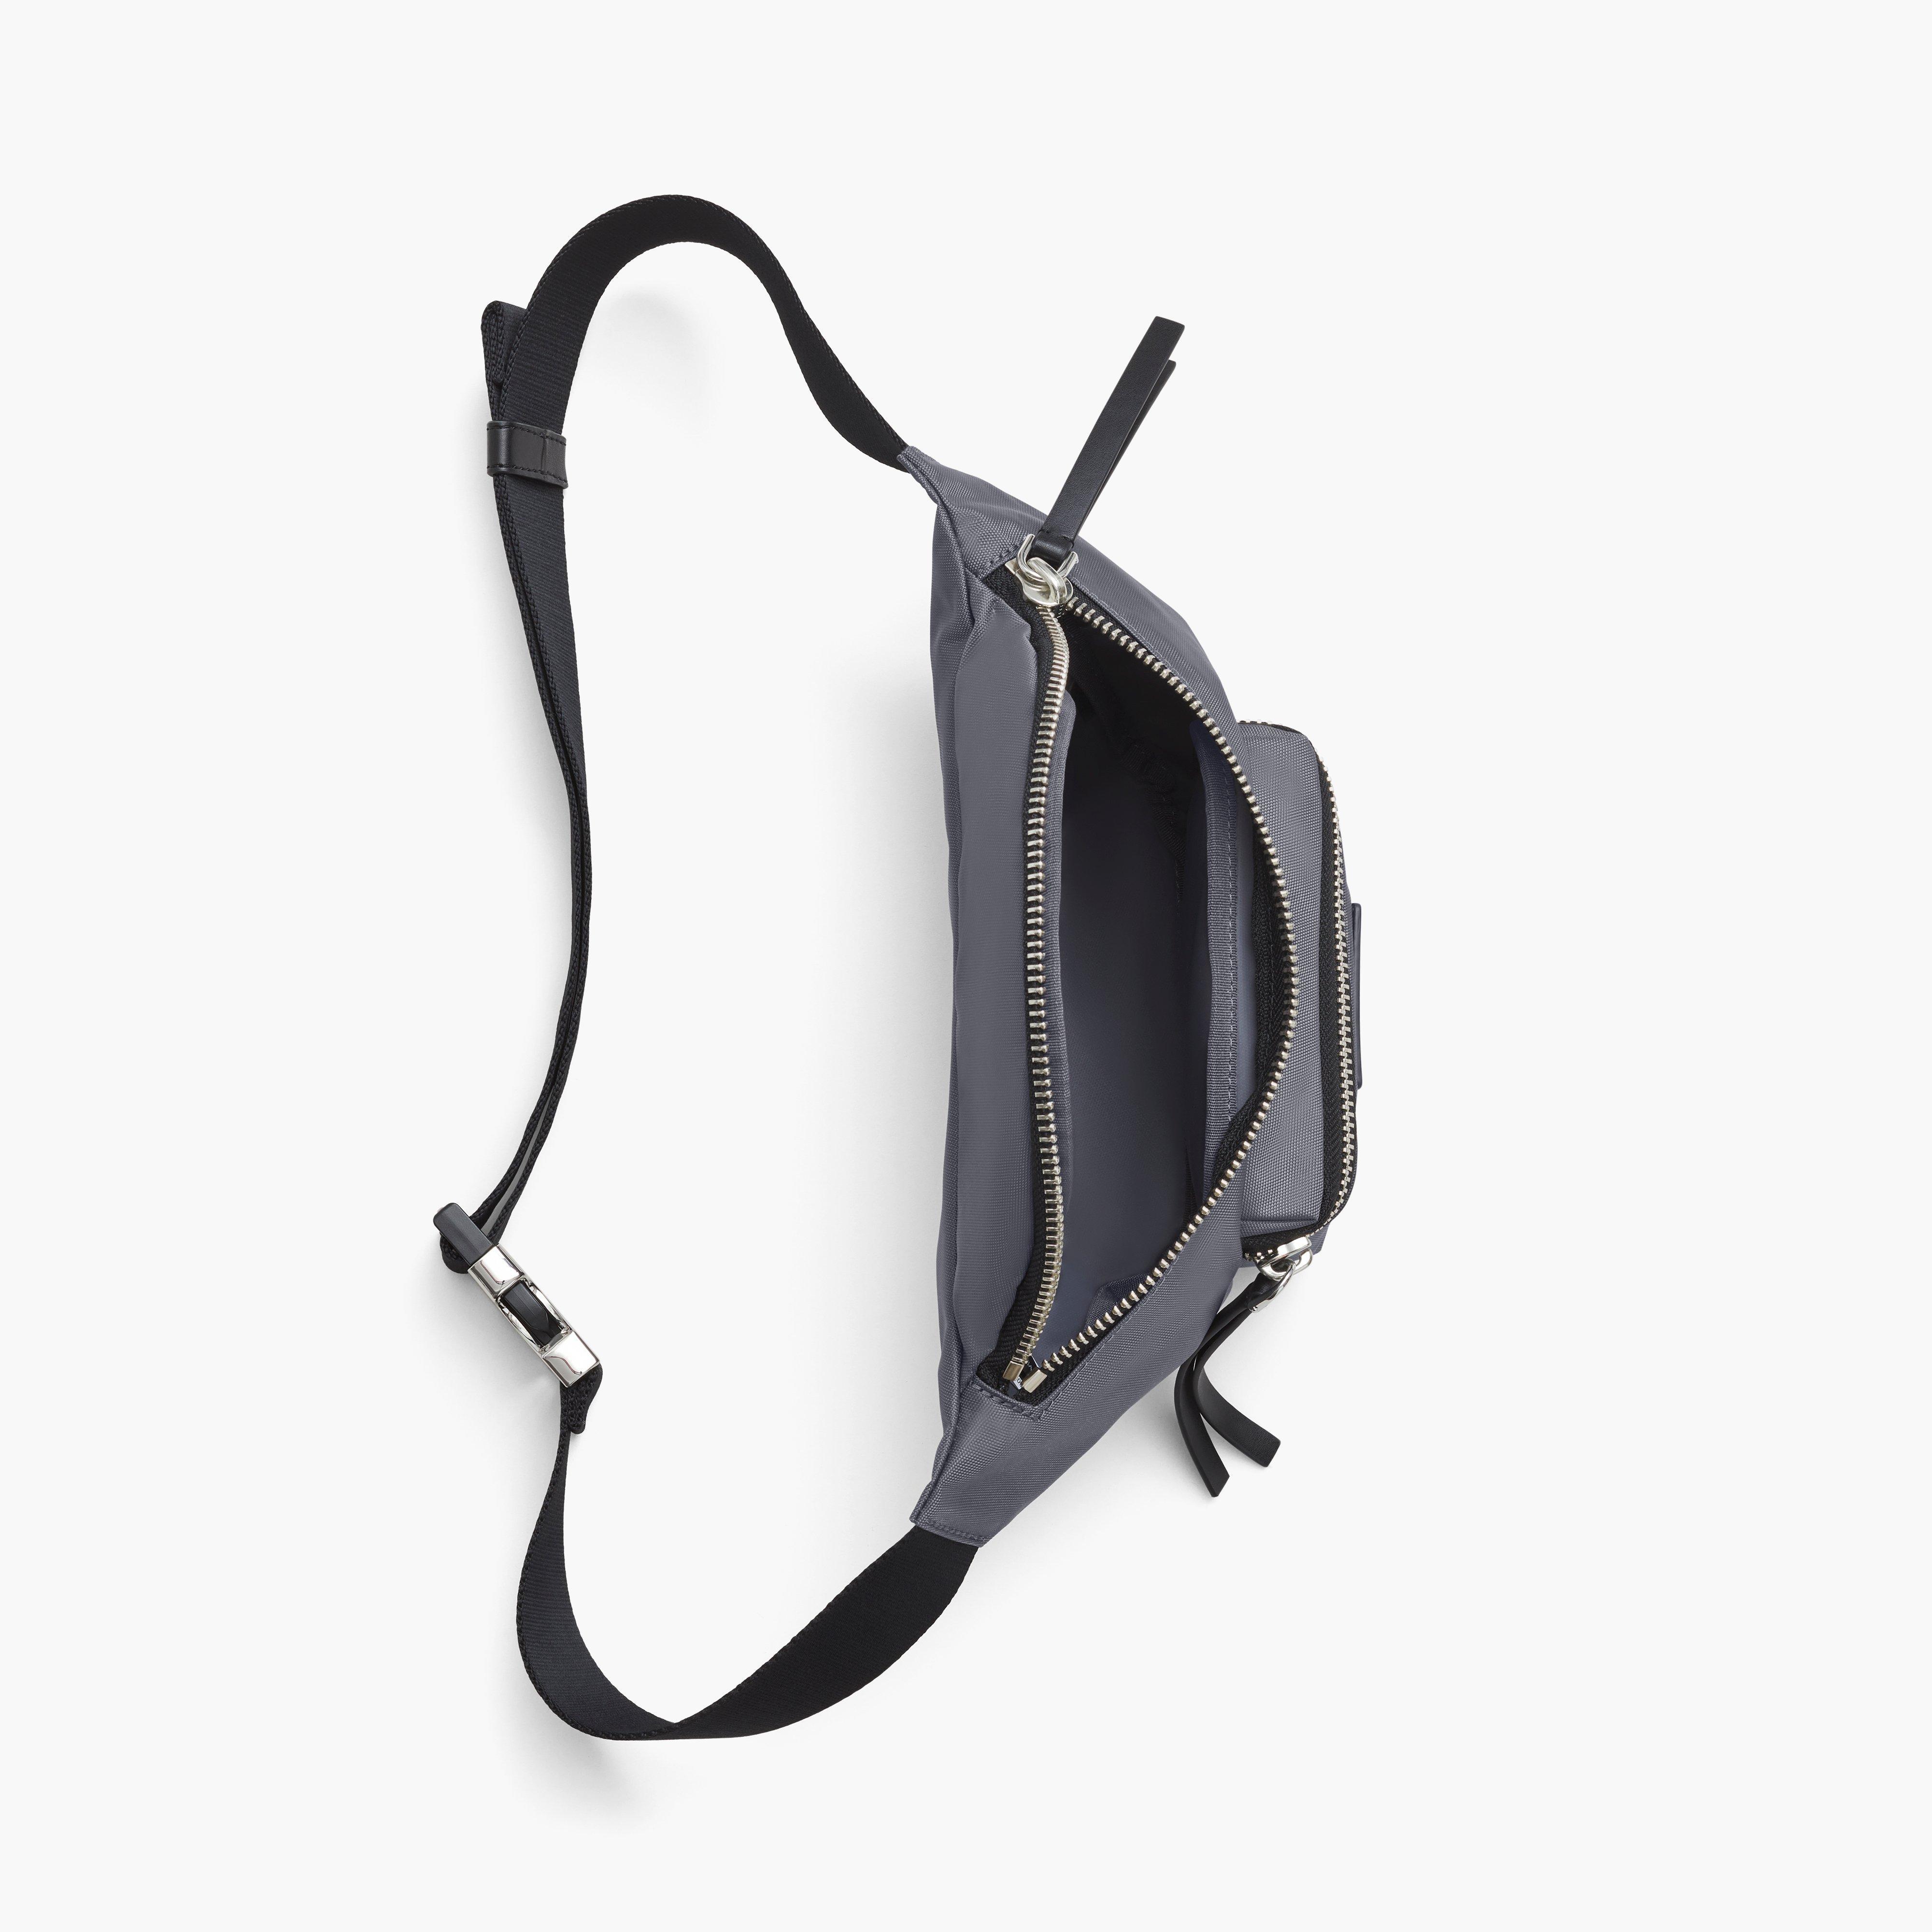 The Biker Nylon Belt Bag, Marc Jacobs